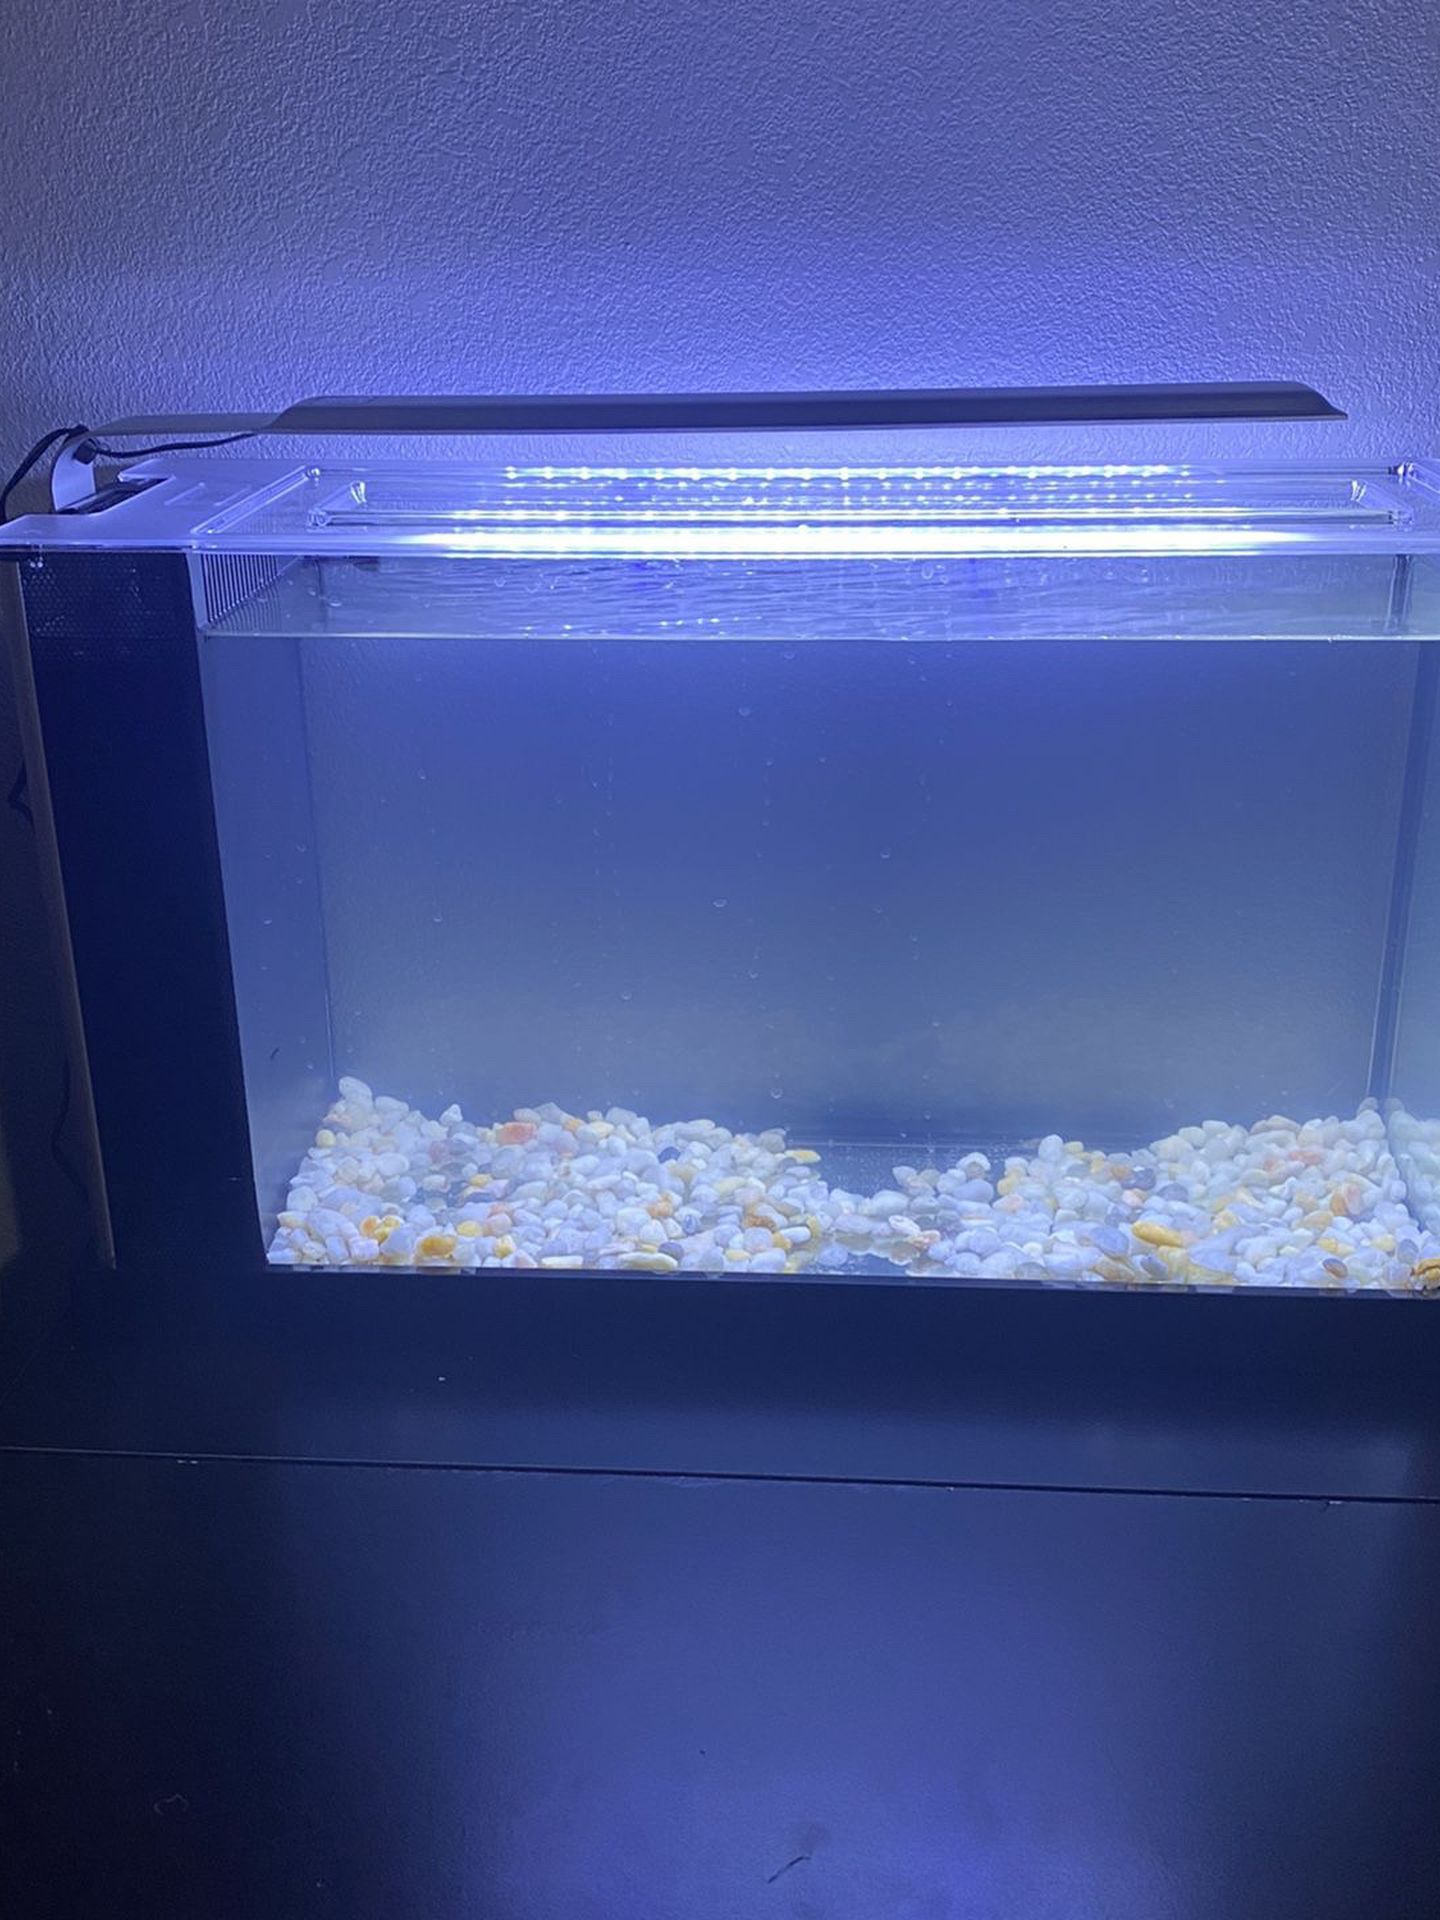 Fluval Spec V 5 gallon Aquarium